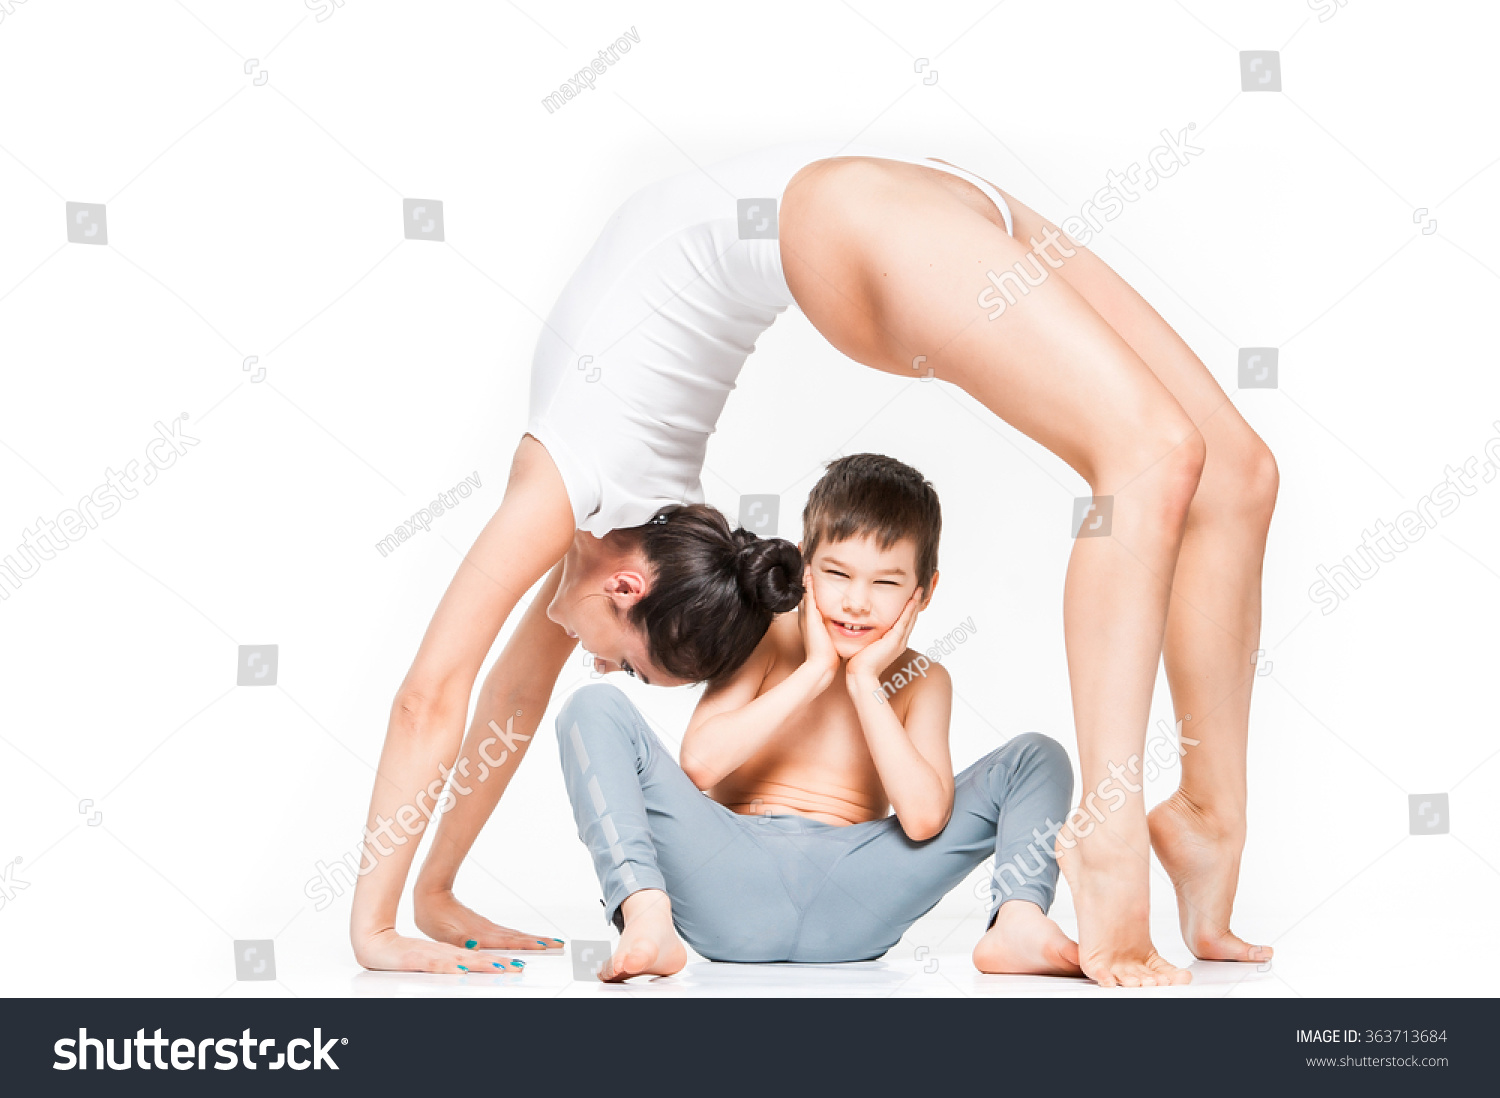 Стоковая фотография 363713684: Mom Doing Yoga Bridge Pose Over Shutterstock...